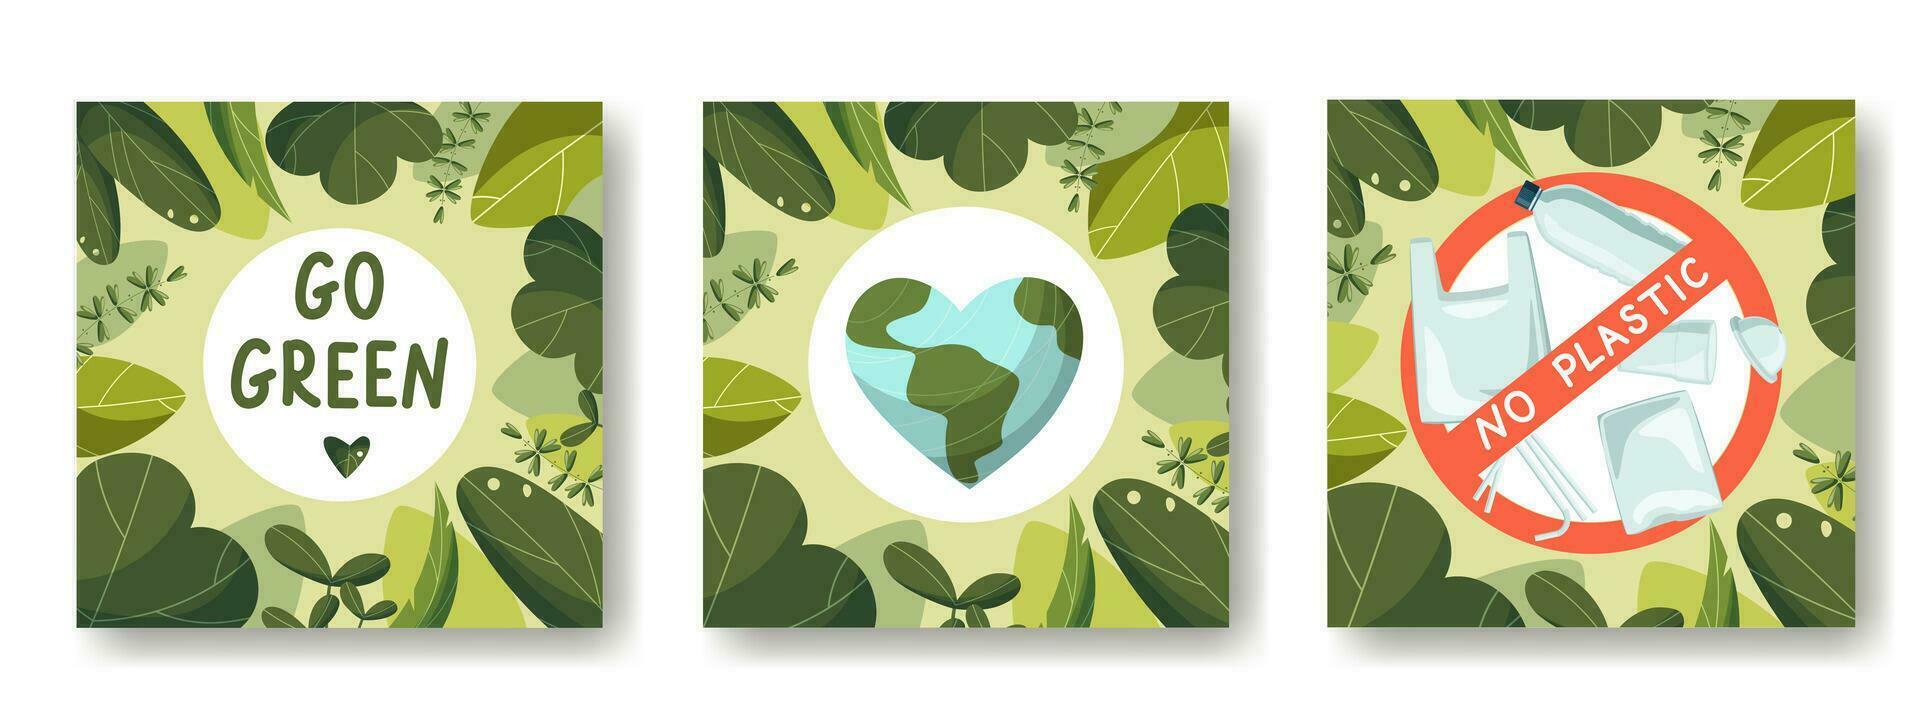 un conjunto de tarjetas en el tema de ahorro el tierra, tierra día. No el plastico, amor el tierra, Vamos verde. en un marco de hojas. vector ilustración, dibujos animados plano estilo.